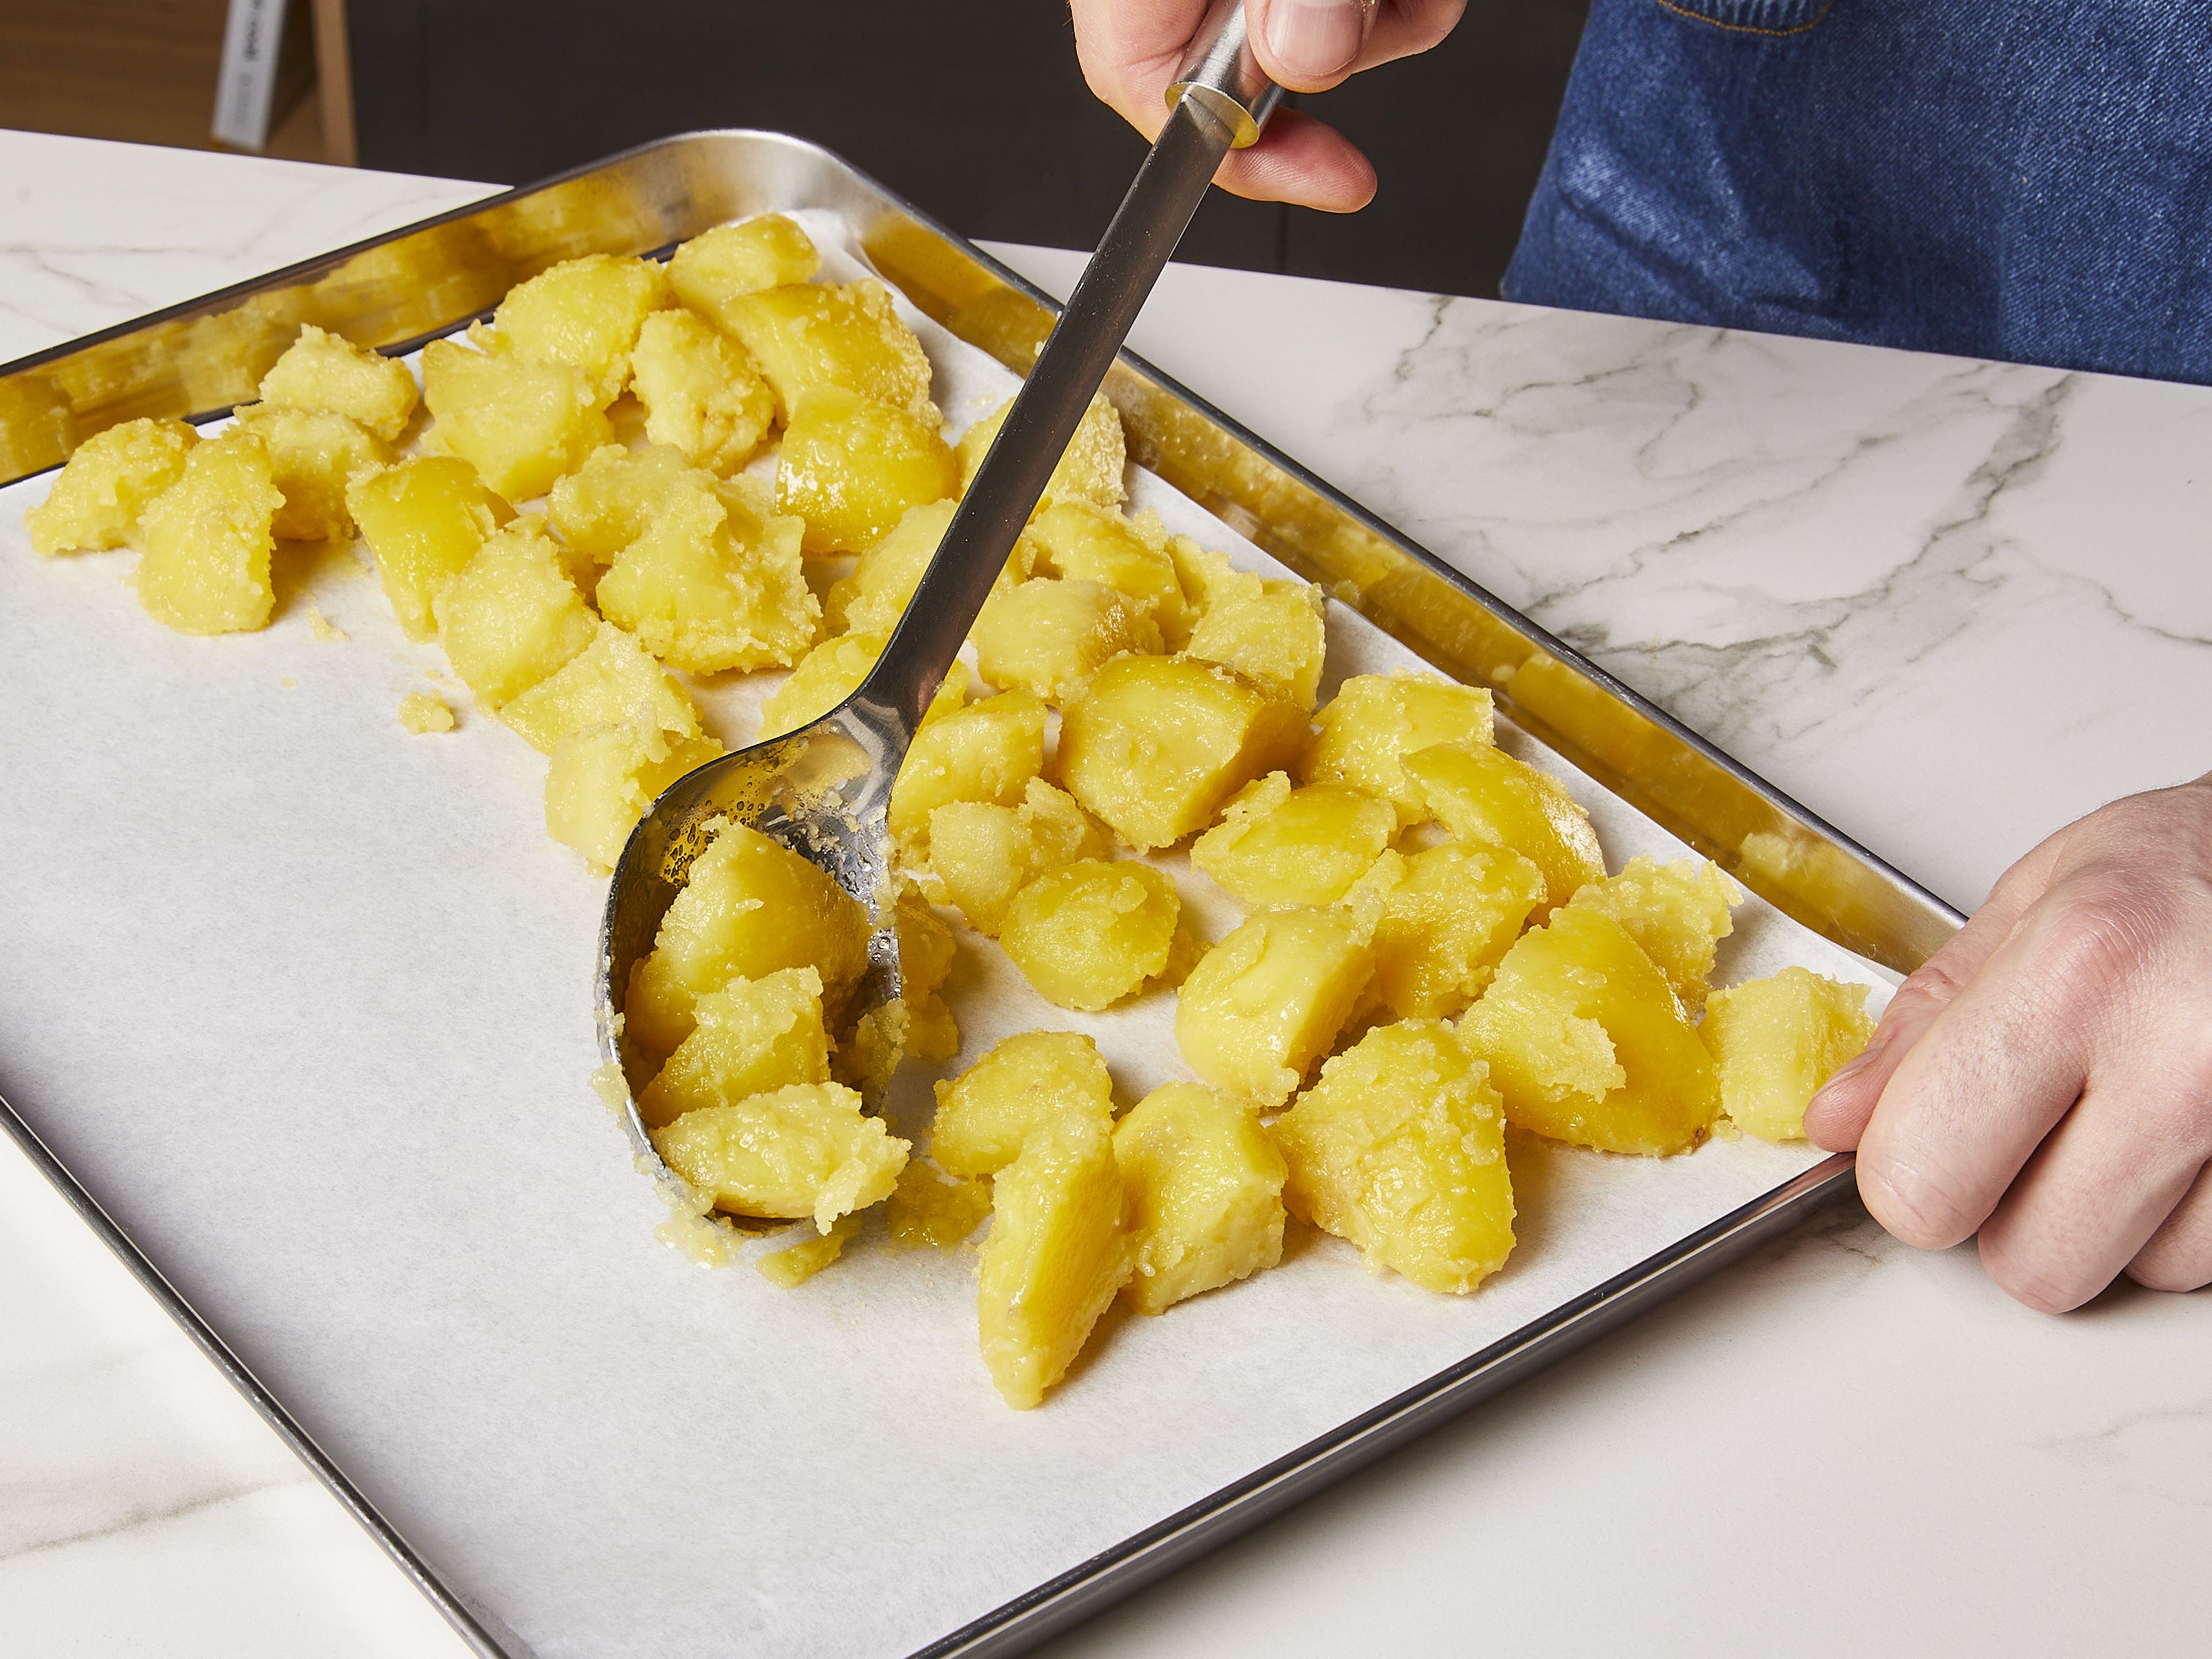 Die Kartoffeln gleichmäßig auf ein mit Backpapier ausgelegtes Backblech verteilen. In den Ofen schieben und ca. 20 Min. lang rösten, ohne sie zu bewegen. Dann mithilfe eines Pfannenwenders wenden und ca. 30 Min. weiterrösten, dabei ein paar Mal wenden, bis sie goldbraun und knusprig sind. In der Zwischenzeit die Zwiebel schälen und in dünne Streifen schneiden.